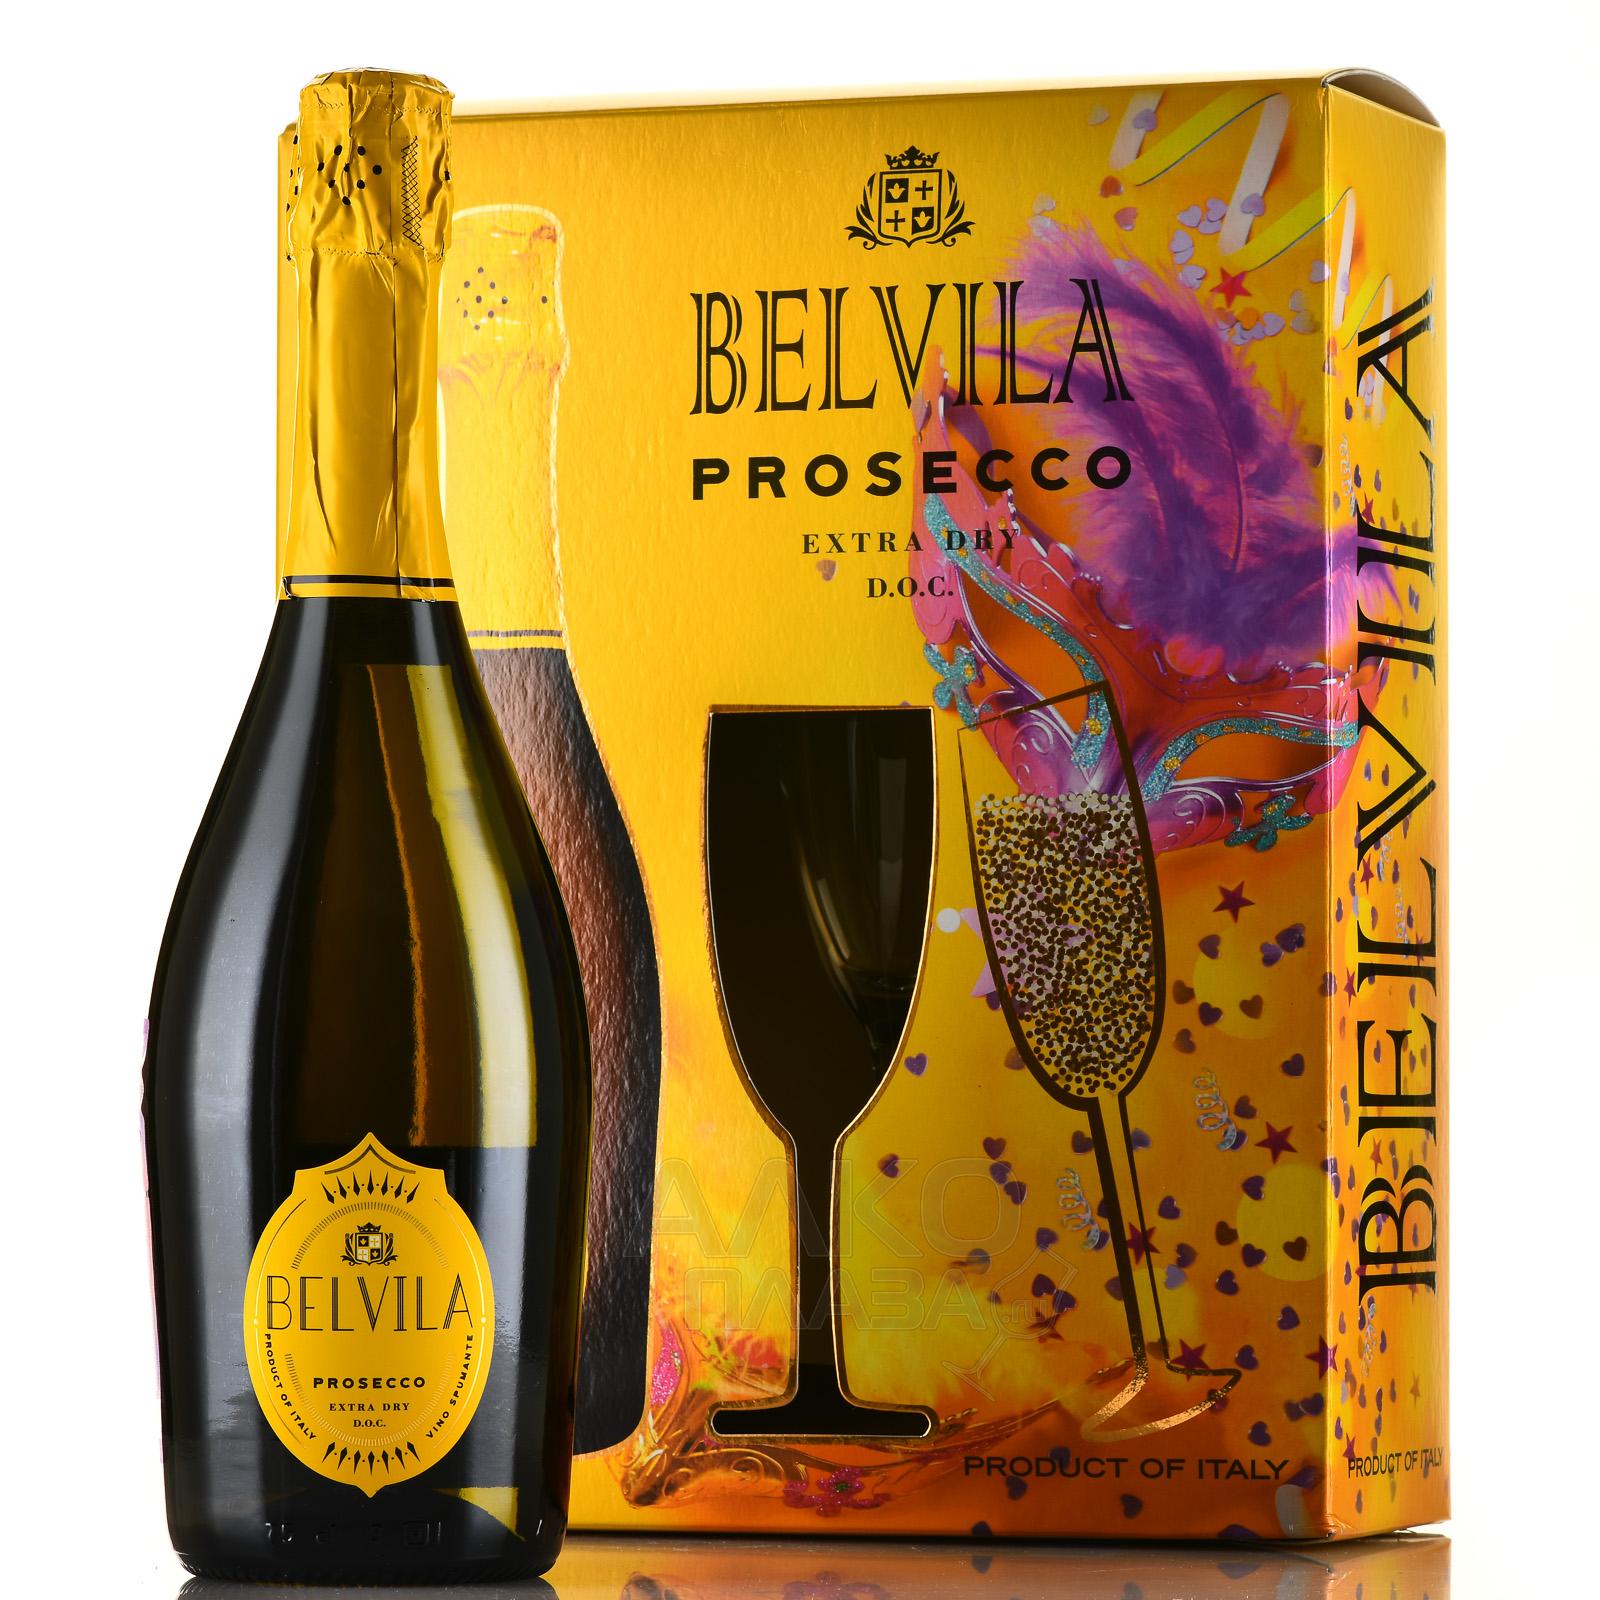 Belvila Prosecco DOC Spumante Extra Dry Villa Degli Olmi - вино игристое Белвила Просекко Спуманте Экстра Драй 0.75 л белое сухое в п/у с 2-мя бокалами